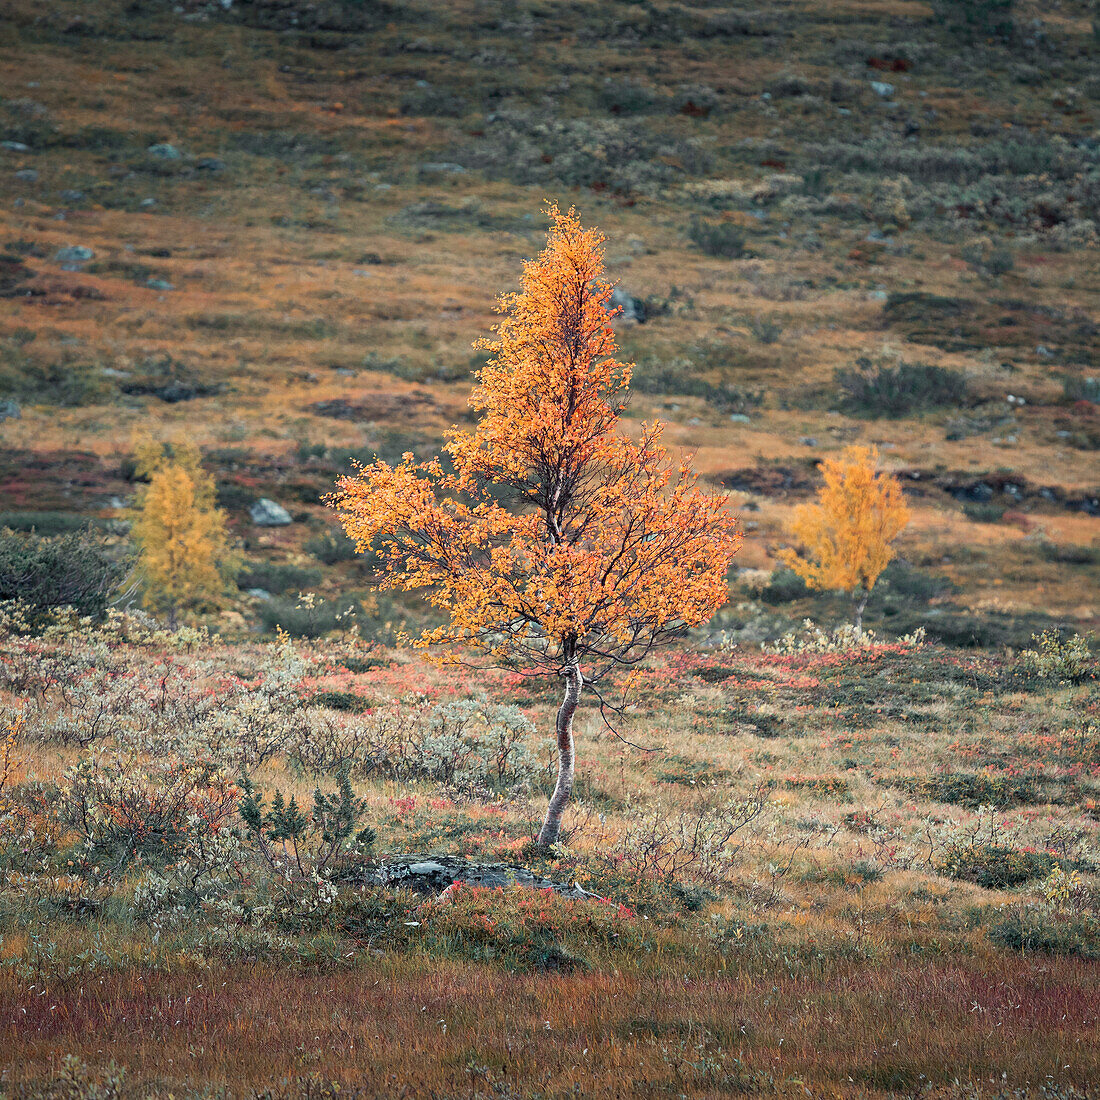 Baum mit gelben Blättern in der Landschaft von Jämtland im Herbst in Schweden\n